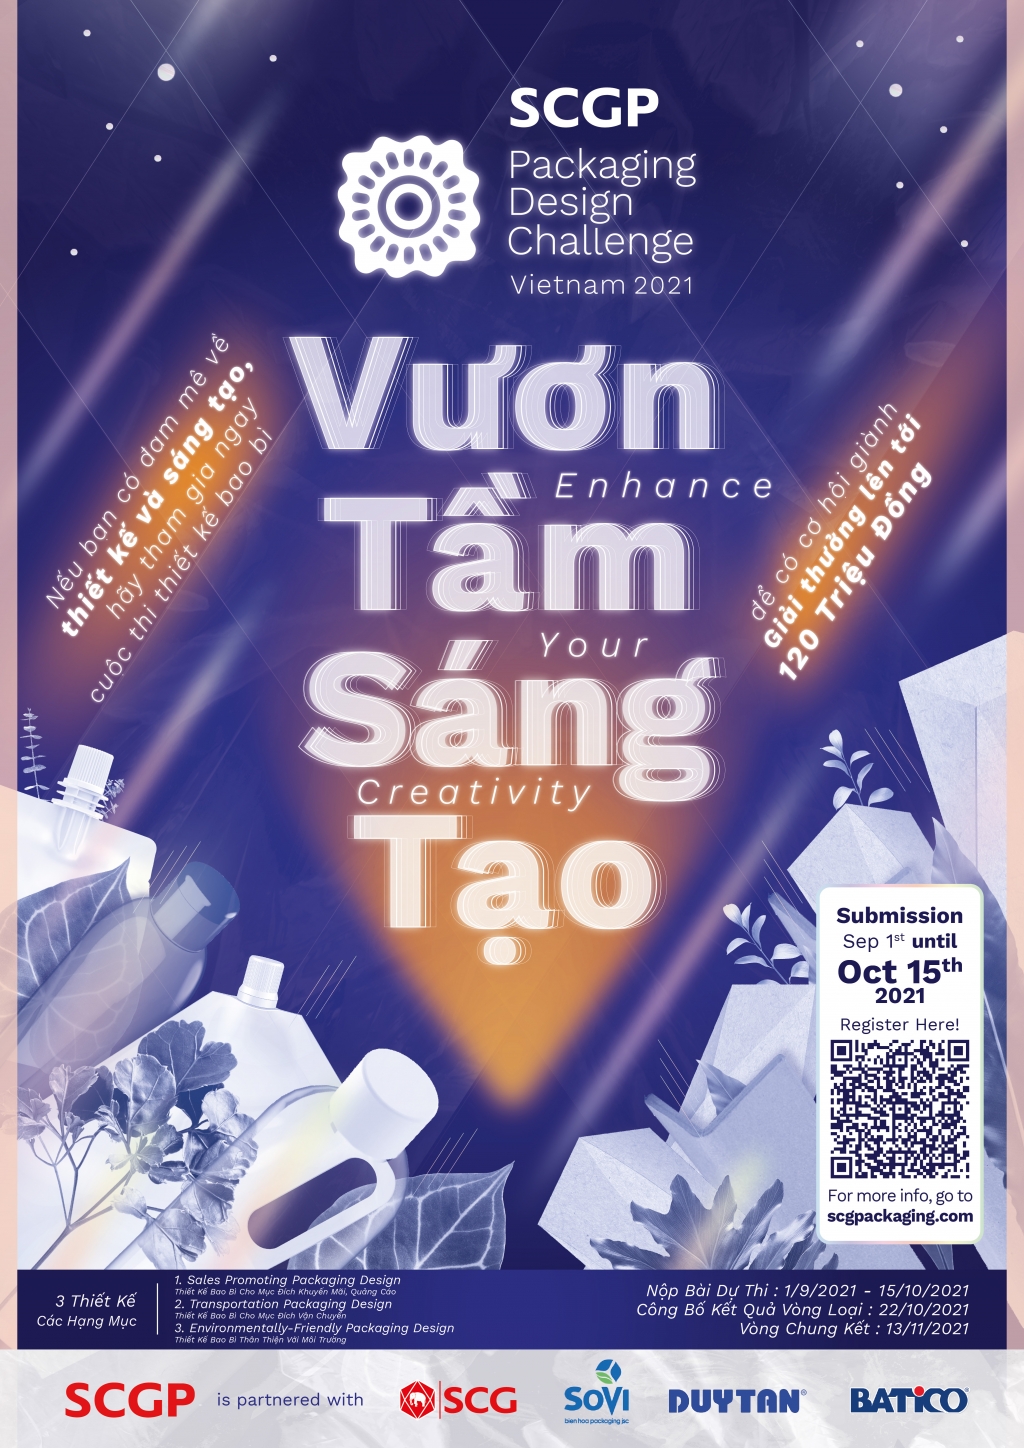 Hình ảnh về cuộc thi: uộc thi Thiết kế bao bì SCGP Packaging Design Challenge Việt Nam 2021 với chủ đề “Vươn tầm sáng to” khuyến khích đối tượng sinh viên có đam mê thiết kế, tư duy sáng tạo vượt qua những ranh giới trong thiết kế bao bì nhằm thúc đẩy sự phát triển của ngành bo bì